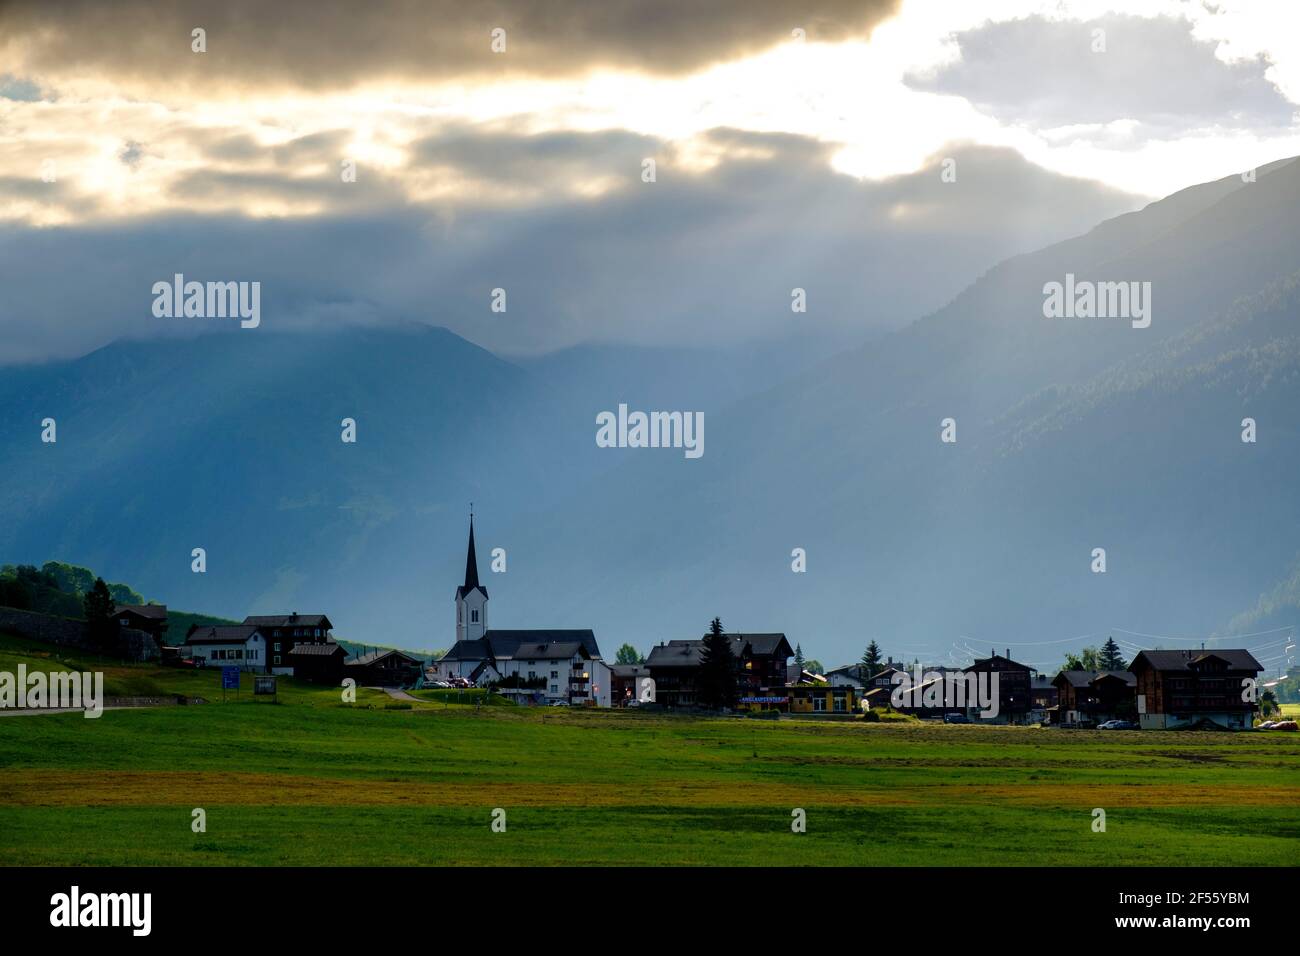 Switzerland, Valais, Ulrichen village in mountains at sunrise Stock Photo